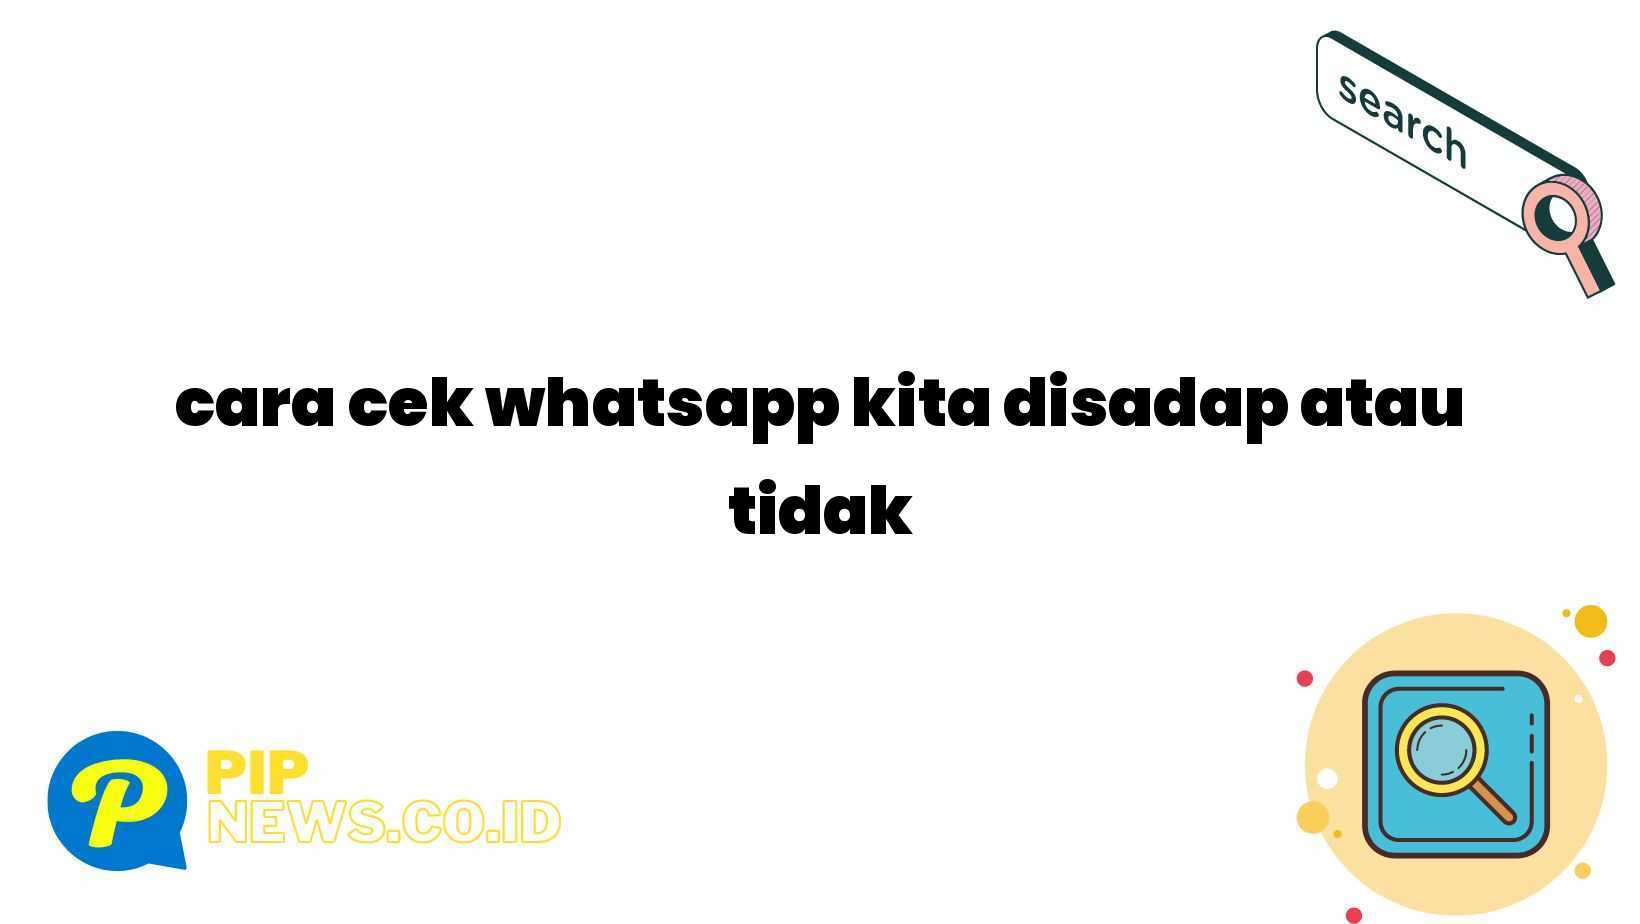 cara cek whatsapp kita disadap atau tidak